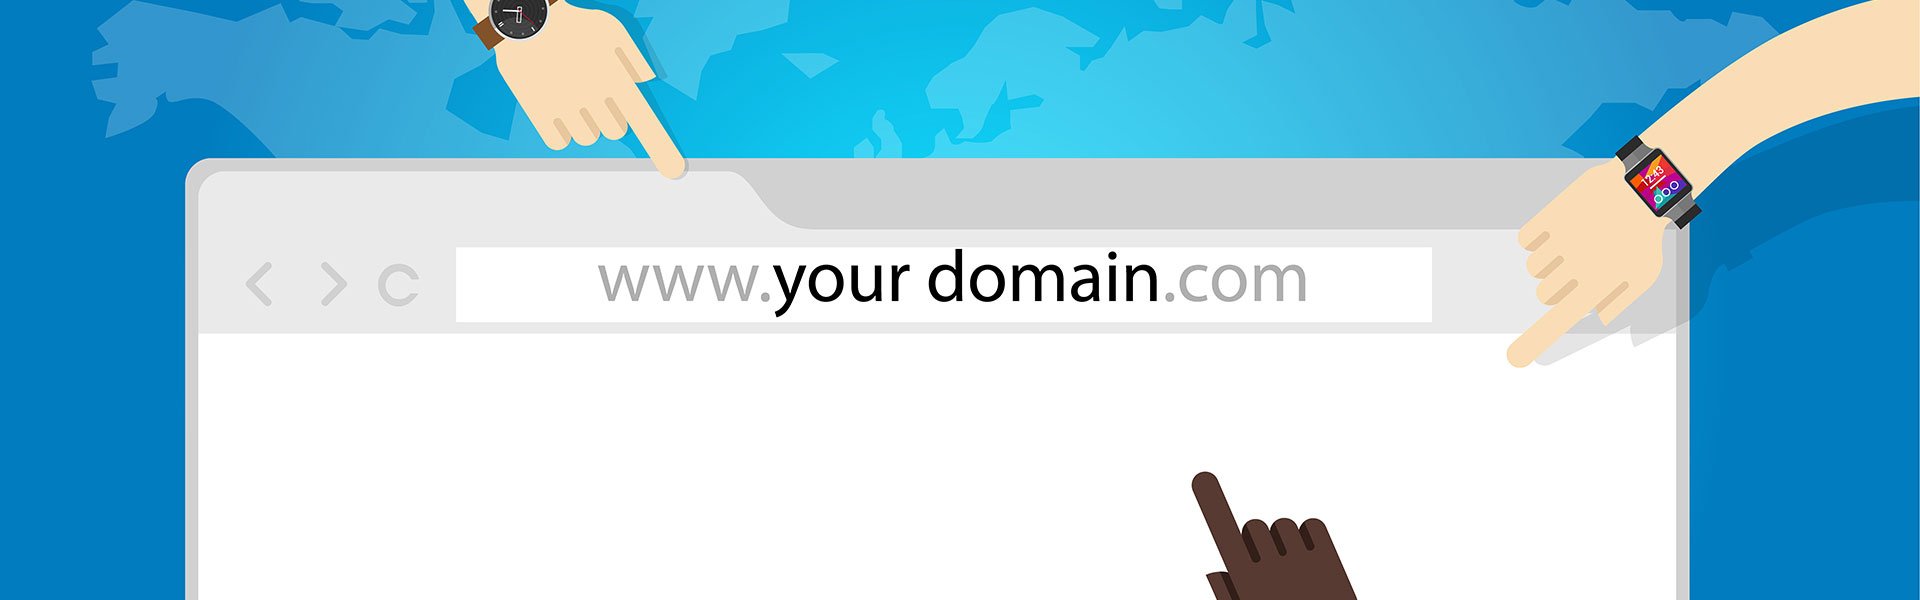 Как работают домены?